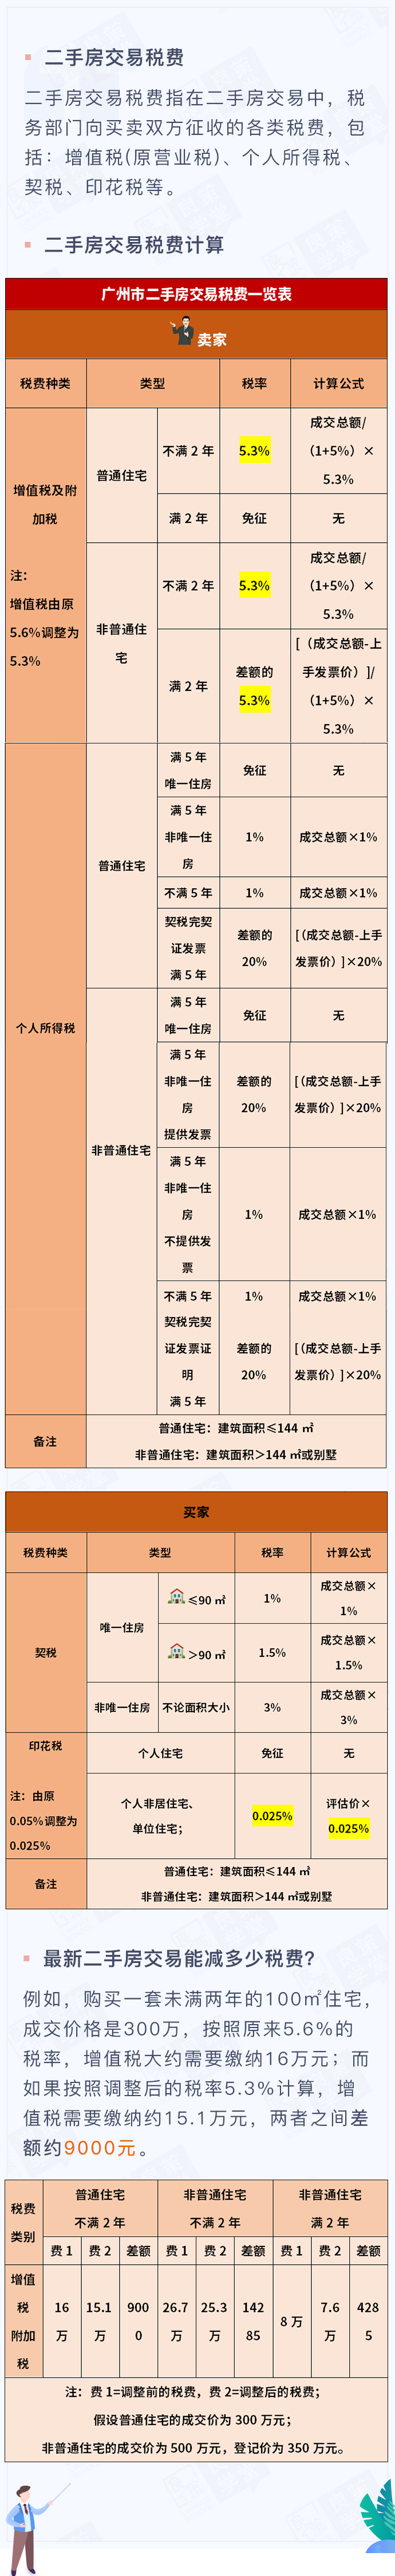 中,小良将为大家介绍二手房交易过程中,广州市的房产契税是怎样计算的